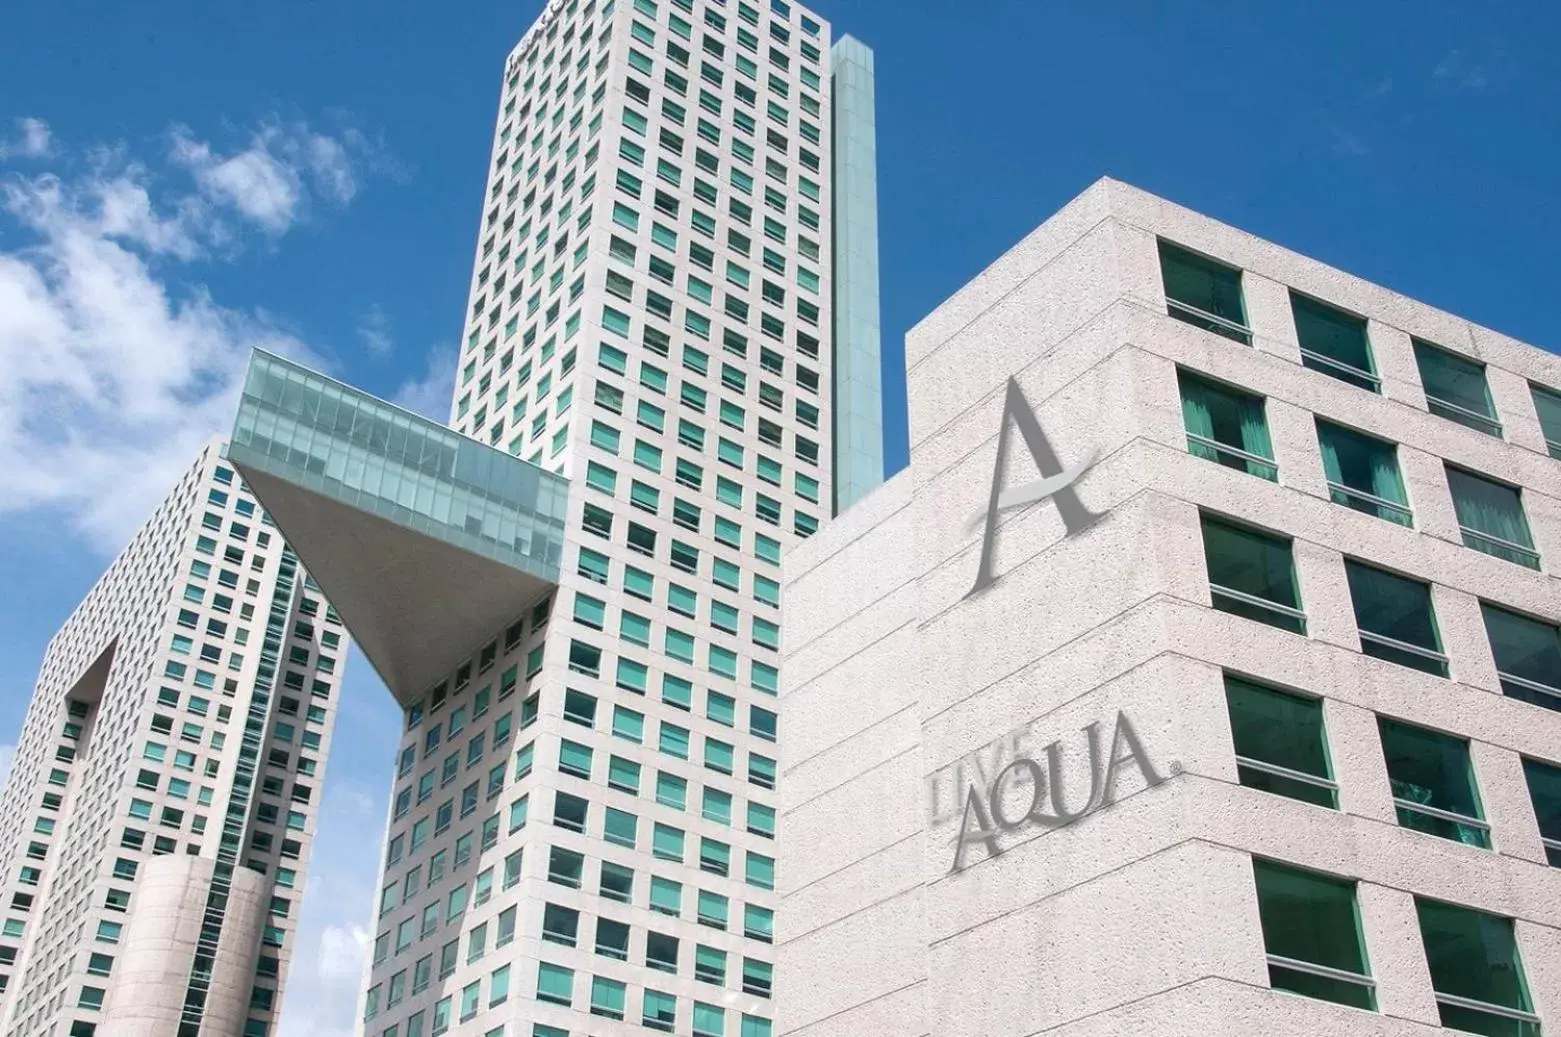 Property Building in Live Aqua Urban Resort Mexico